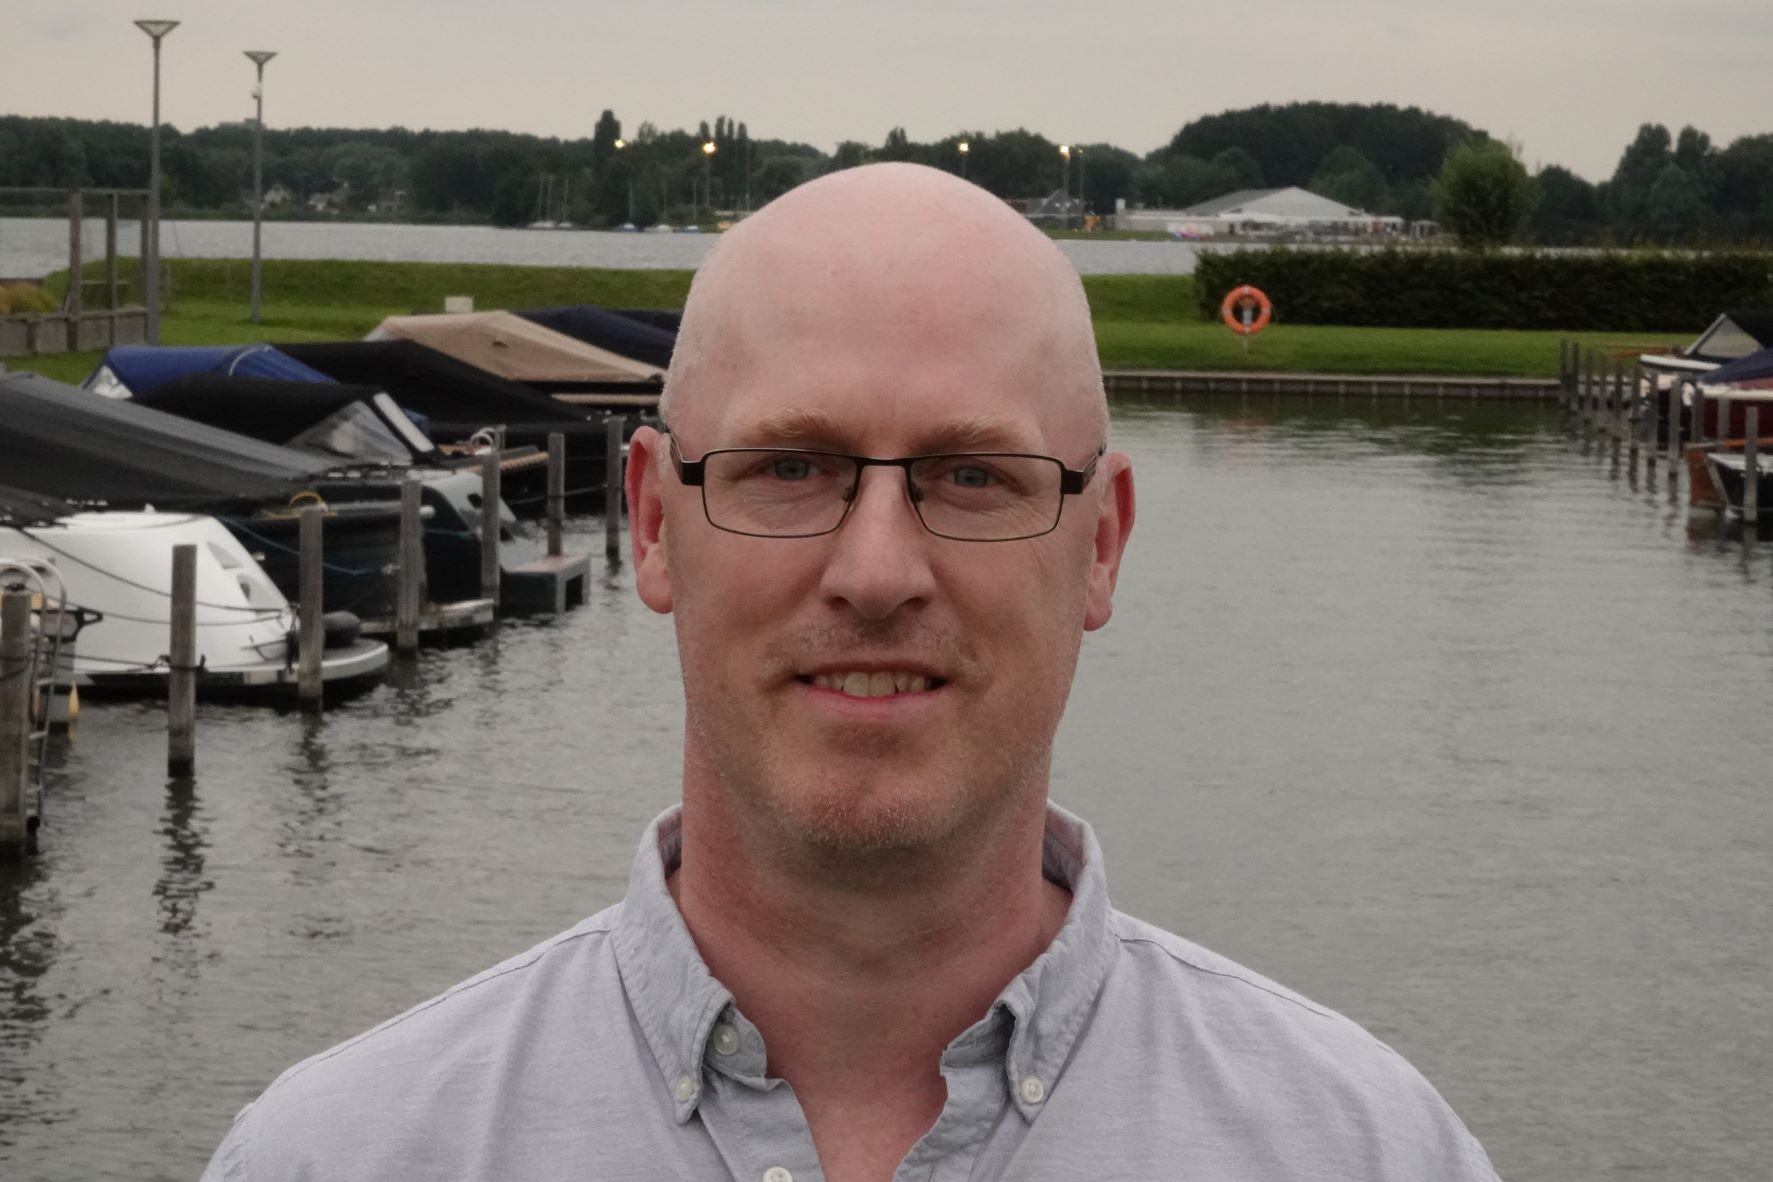 Gert-Jan van der Wielen, Technical consultant at ICT Netherlands